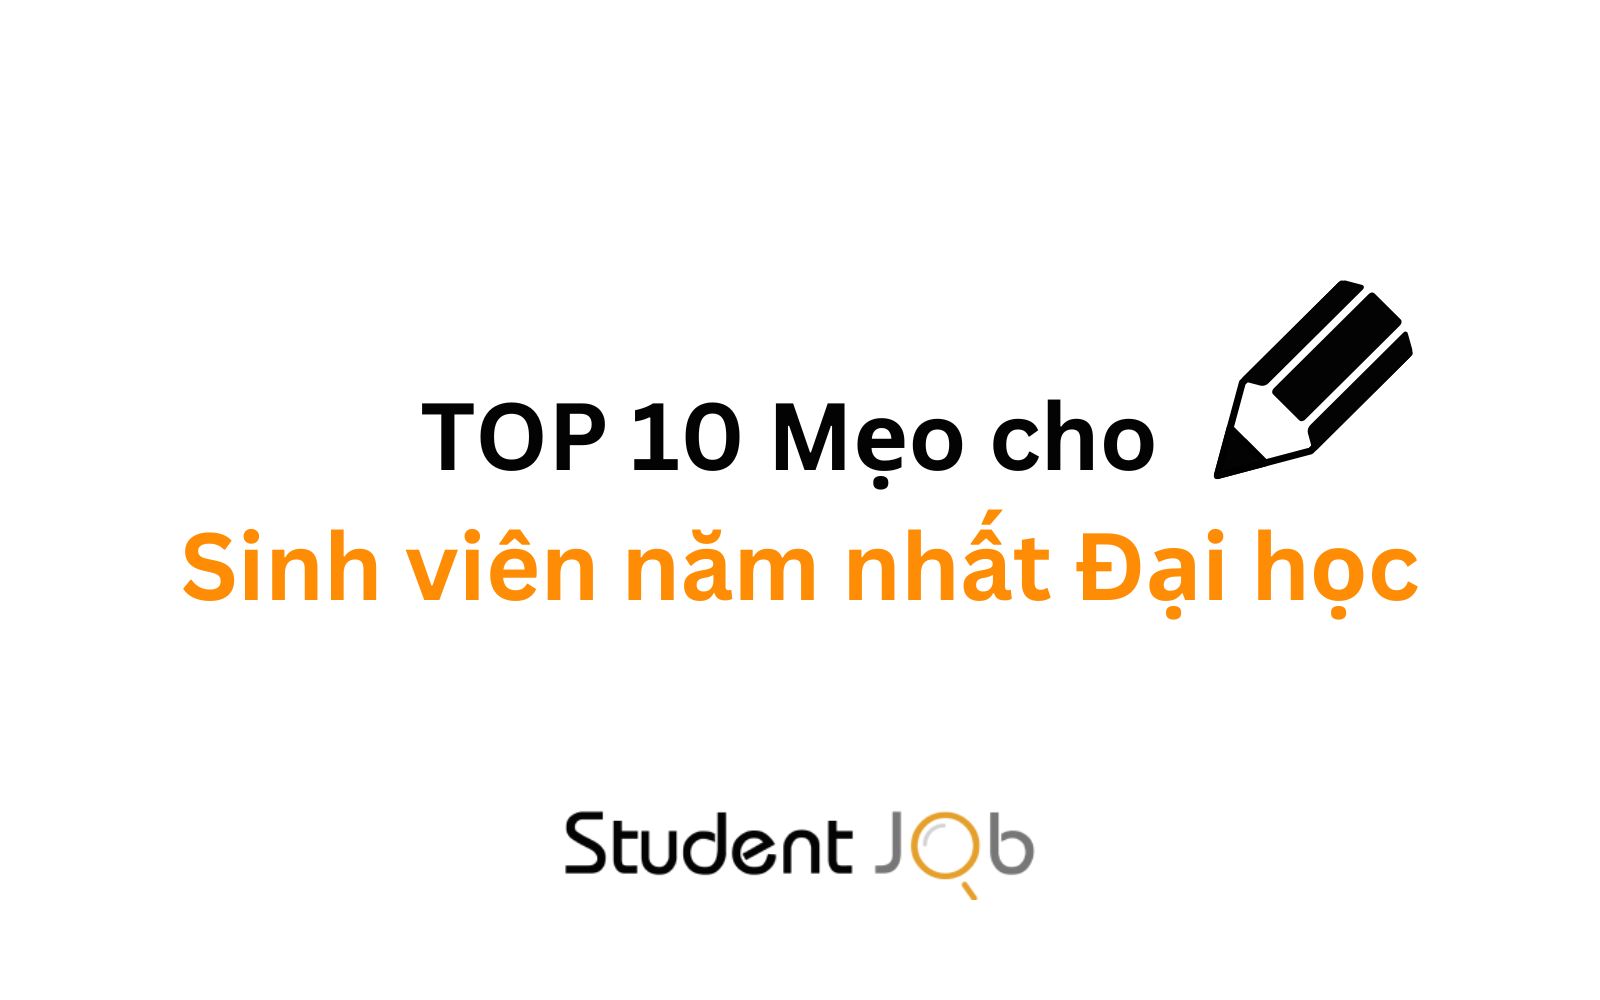 TOP 10 Kinh nghiệm, lời khuyên dành cho sinh viên năm nhất